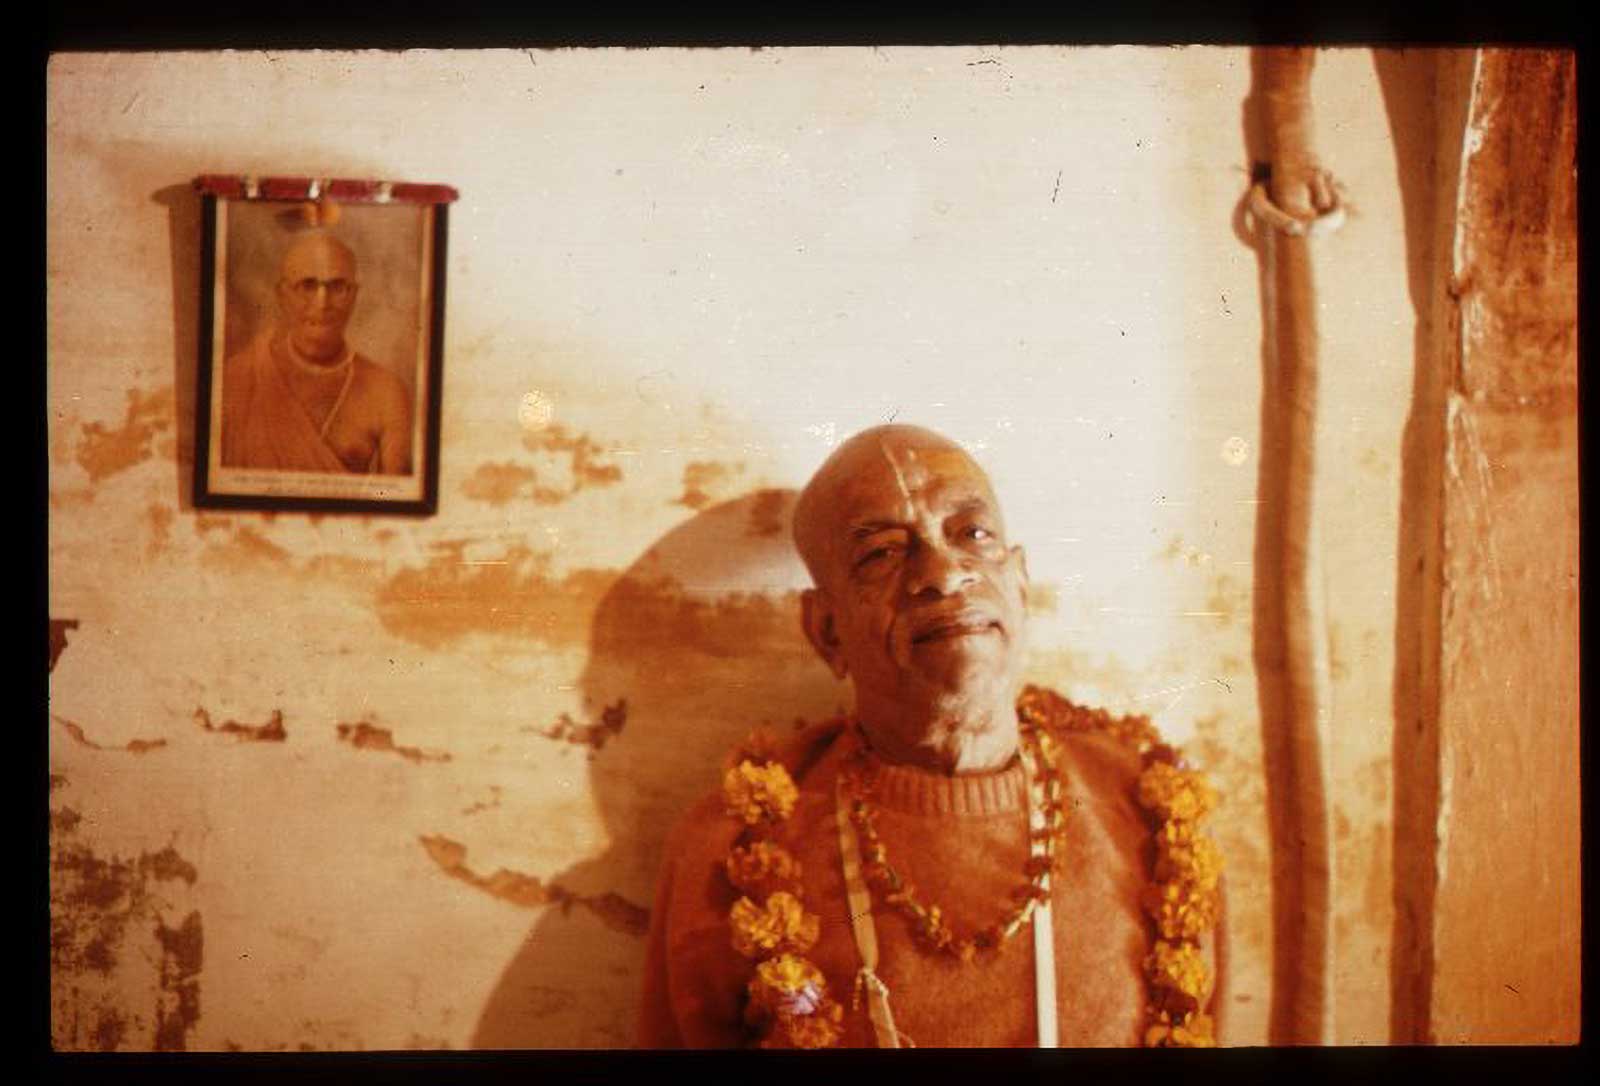 srila prabhupada in his bhajan kutira radha damodara